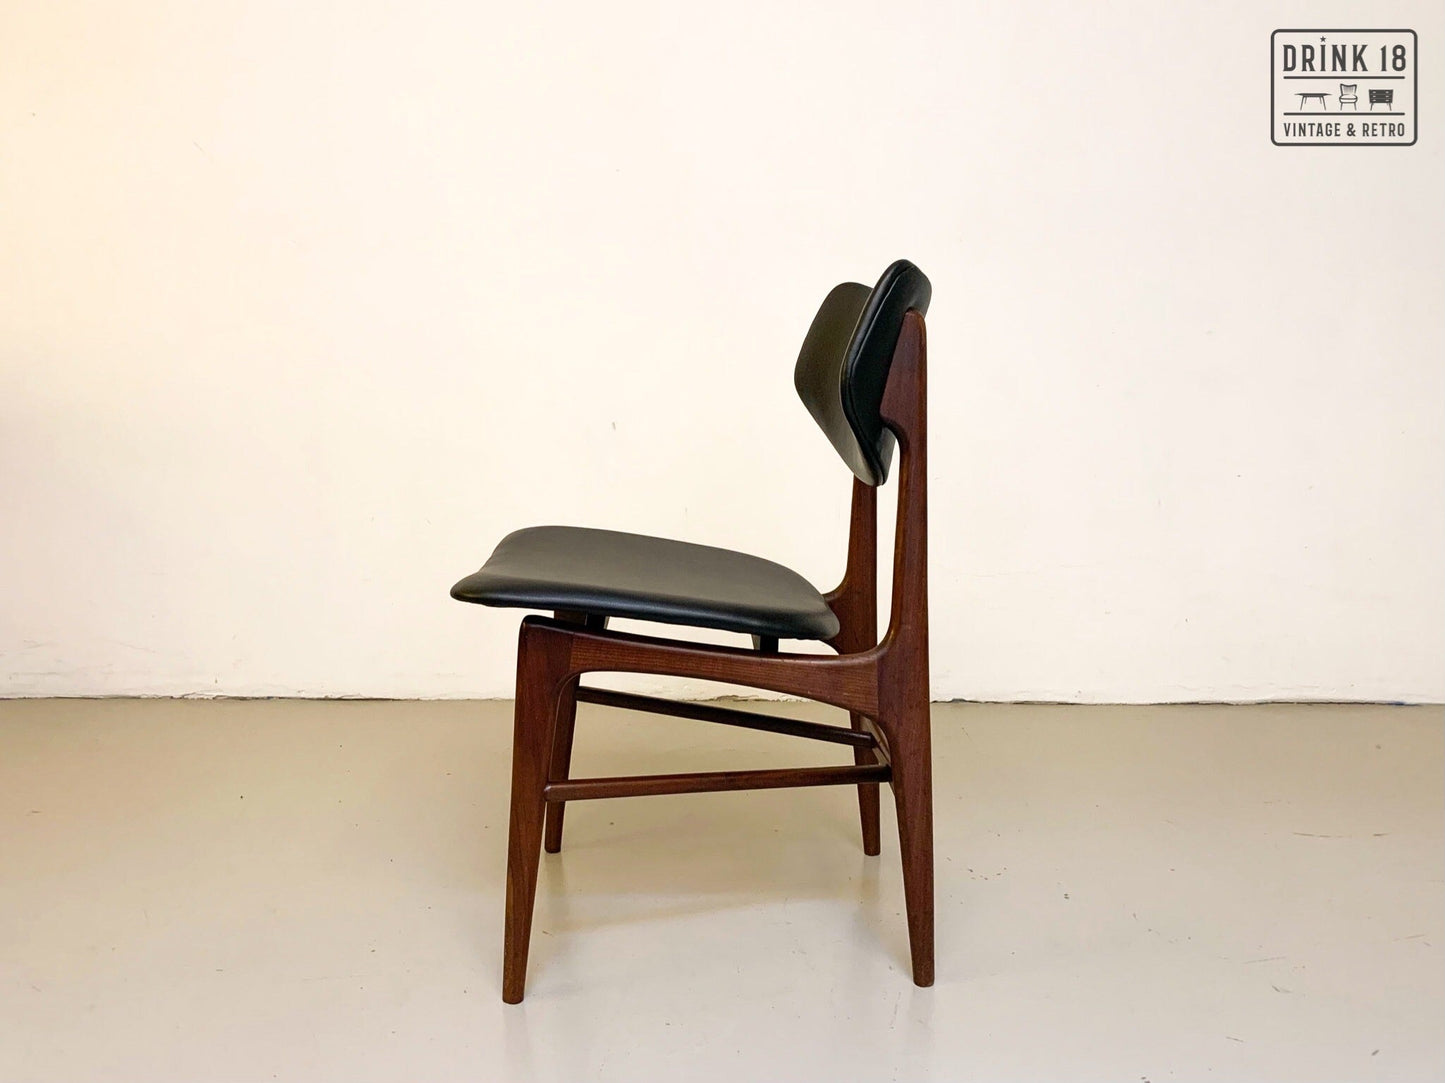 Vier vintage Hamar stoelen - Louis van Teeffelen